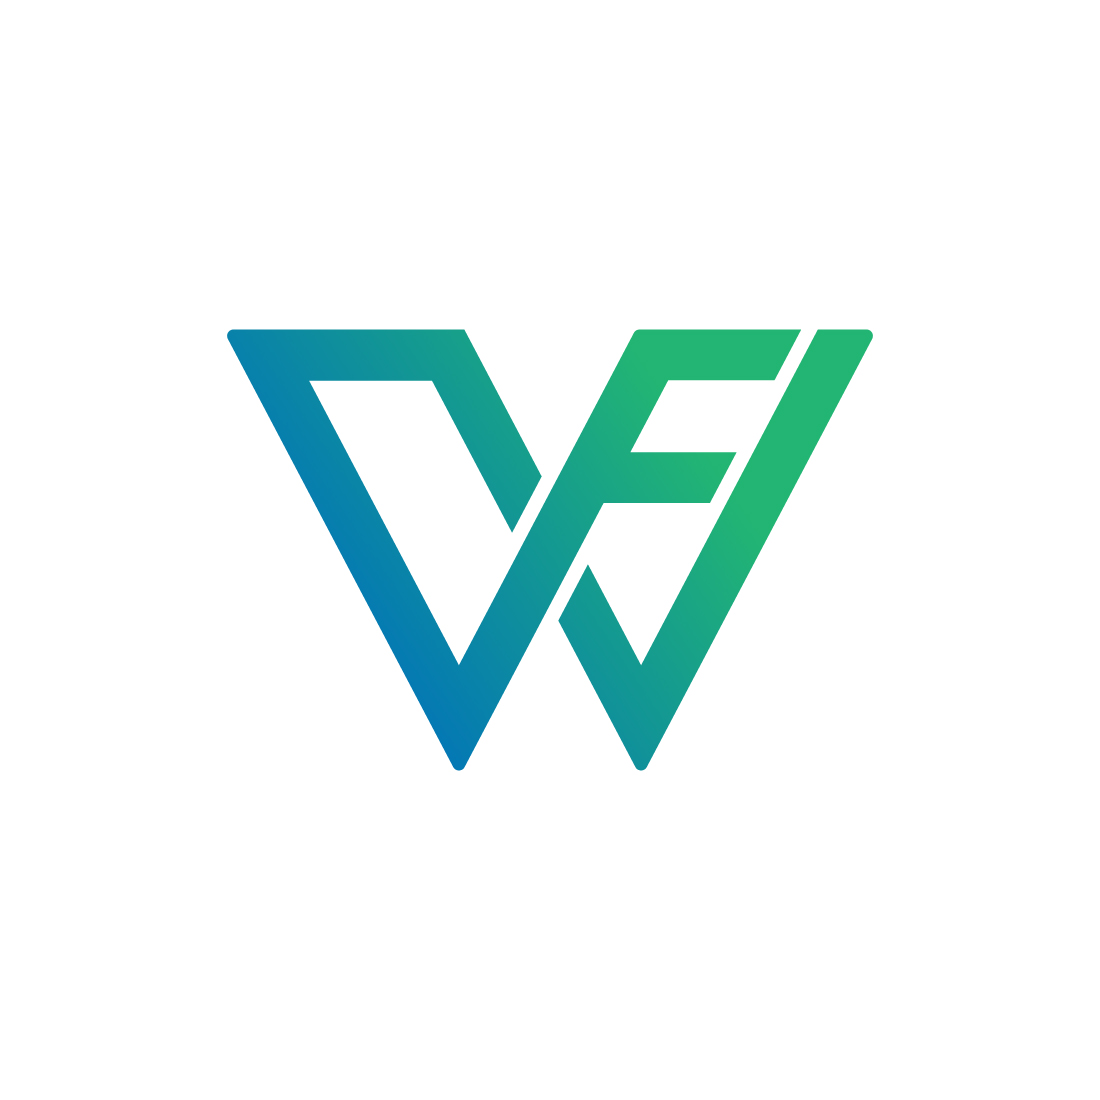 WF logo design preview image.